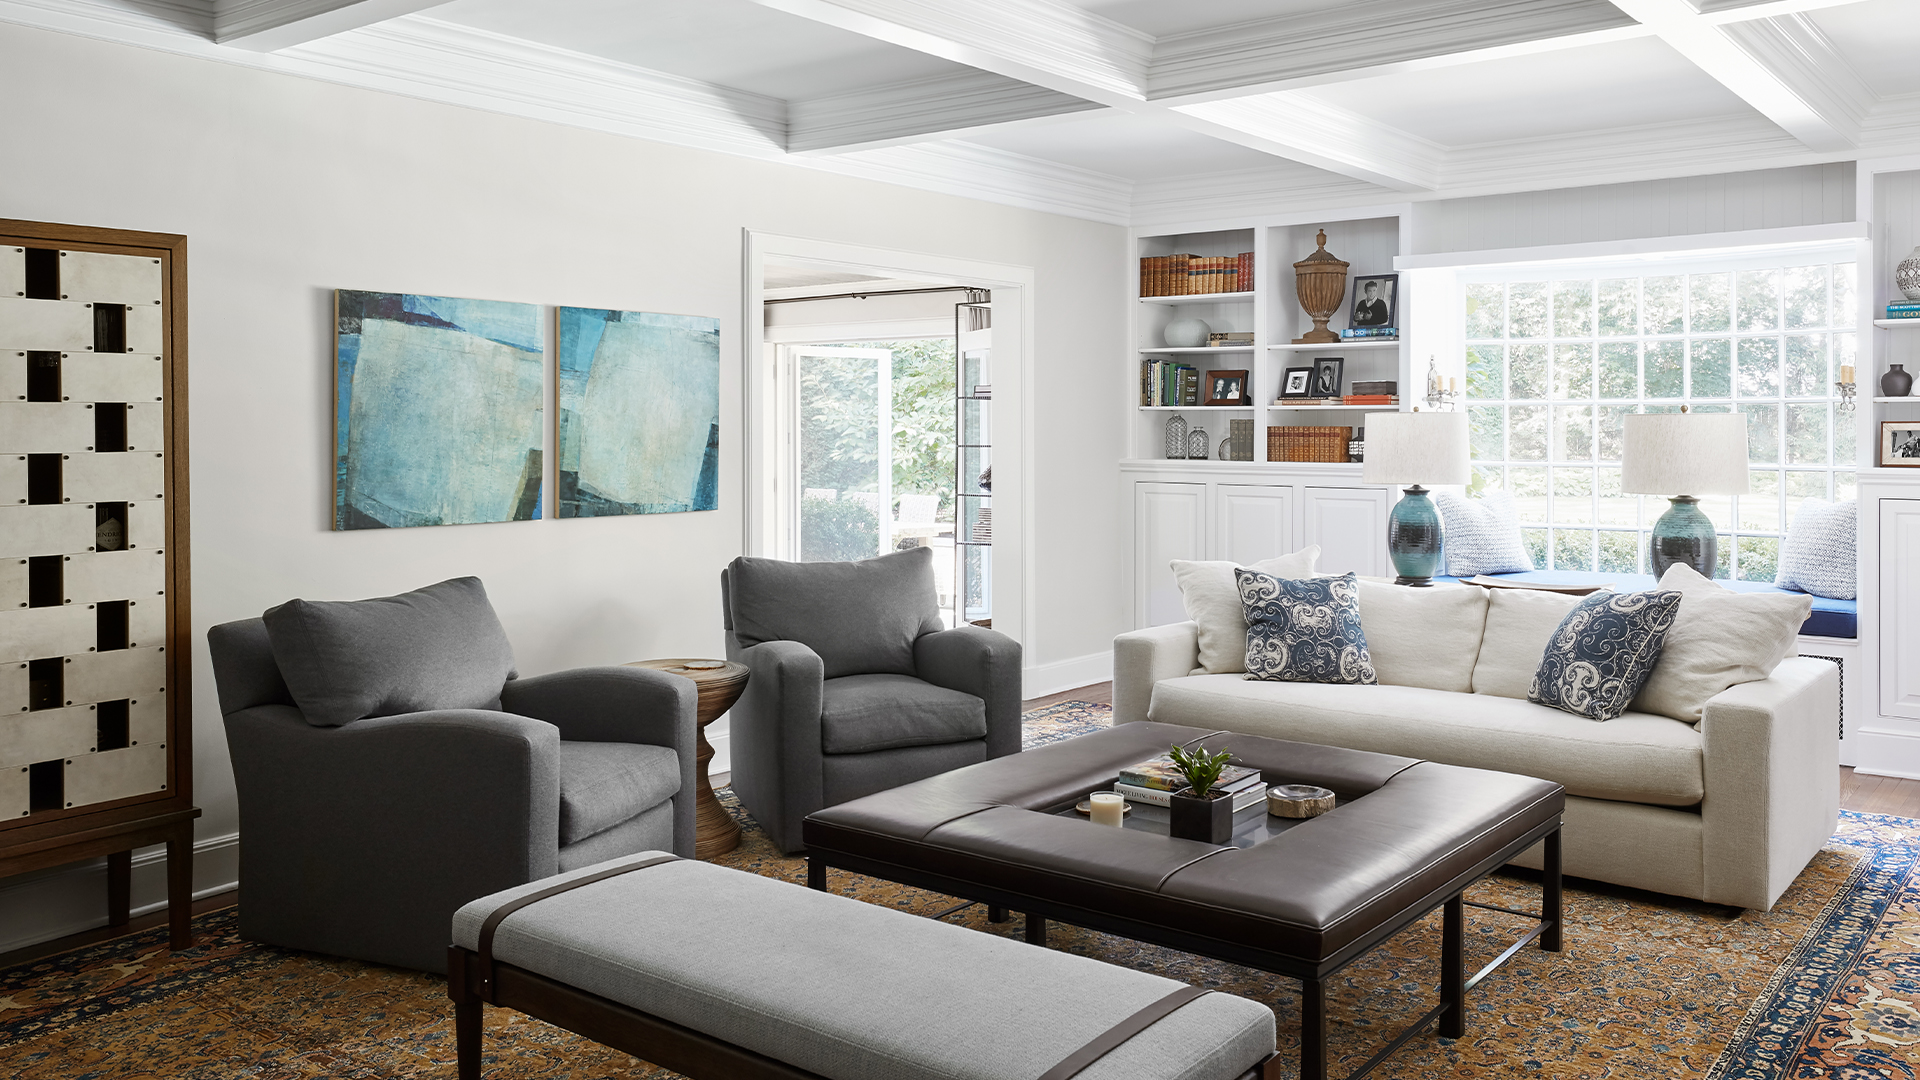 Frank-Ponterio-Interior-Design-North-Shore-Summer-Home-Living-Room